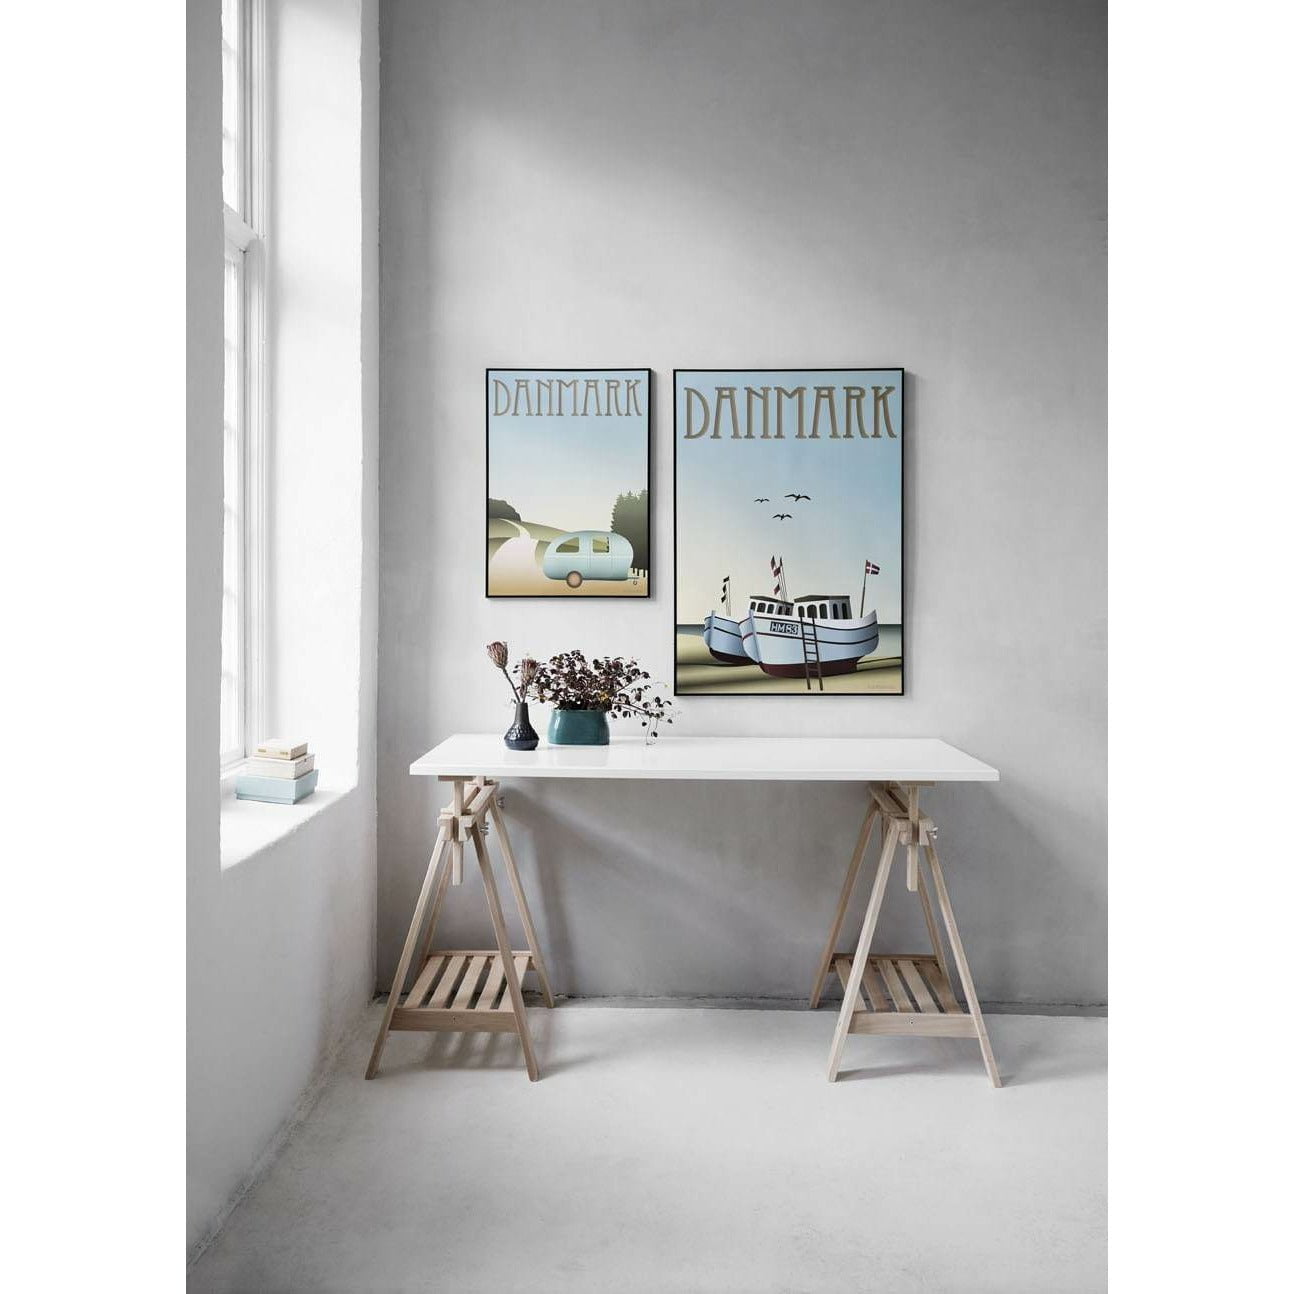 Plakat łodzi rybackich Vissevasse Denmark, 30 x 40 cm